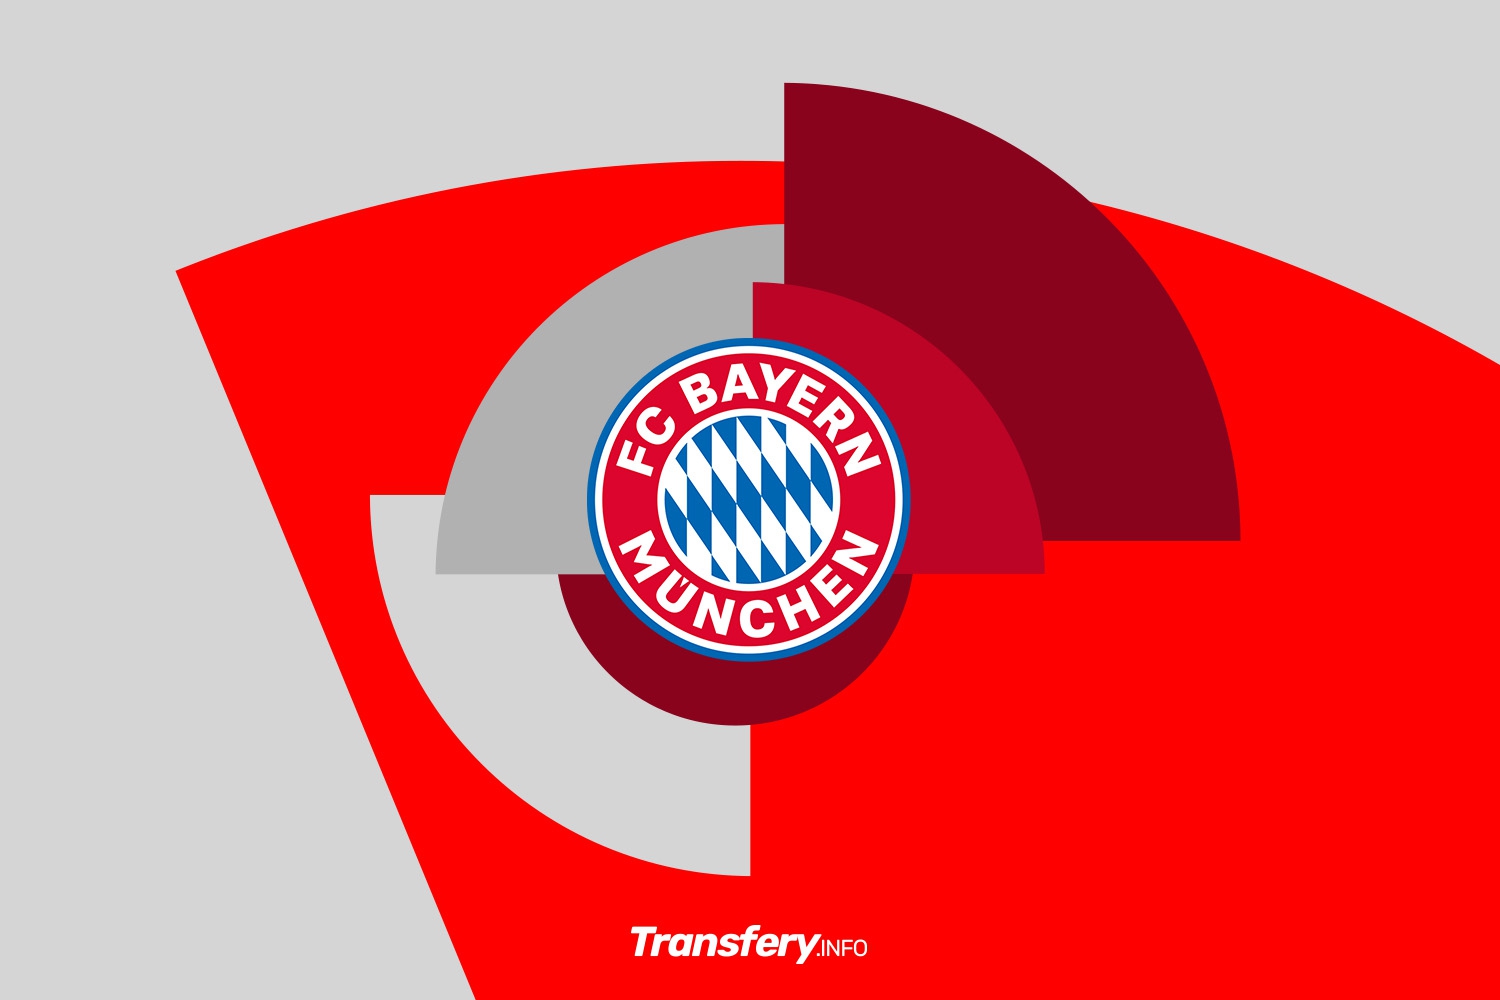 OFICJALNIE: Bayern Monachium zakontraktował włoski talent